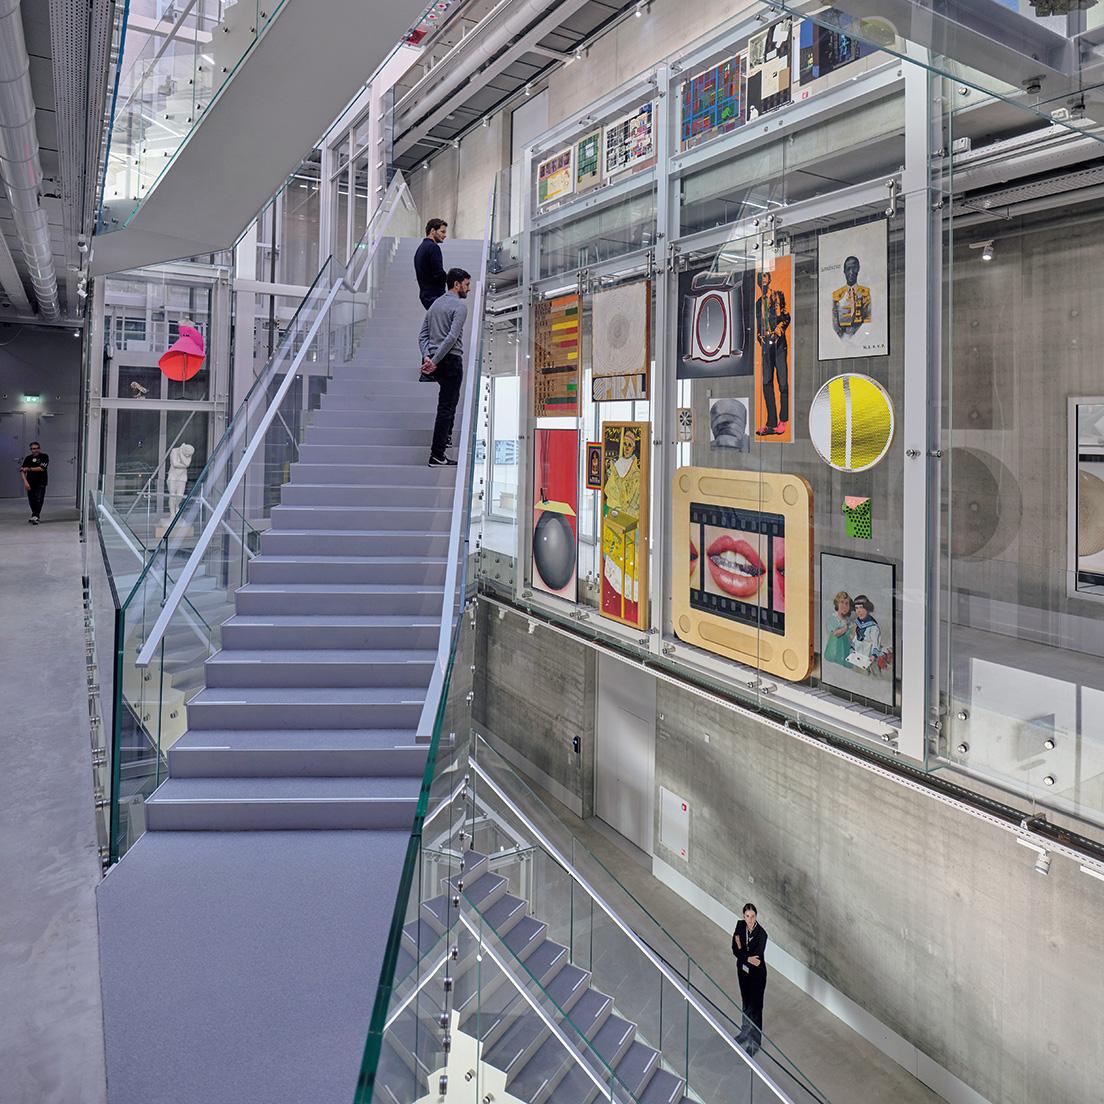 アトリウム内をジグザグに伸びる階段の周りで、多数の作品が展示されている。